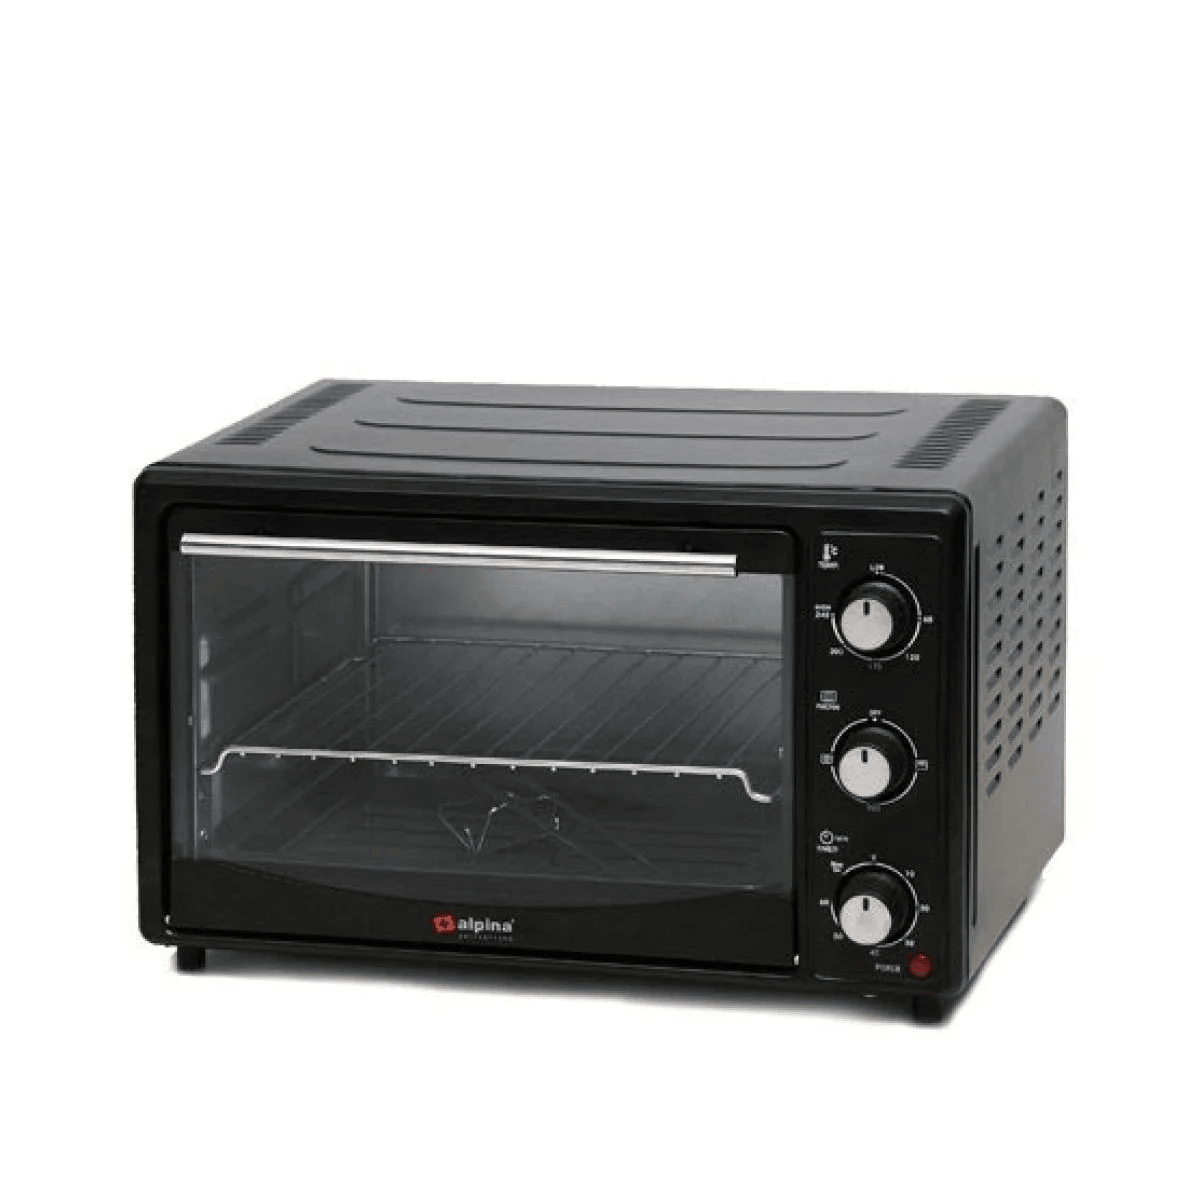 Buy Oven Toaster 48 Ltr Get Hand Blender & Citrus Juicer Free